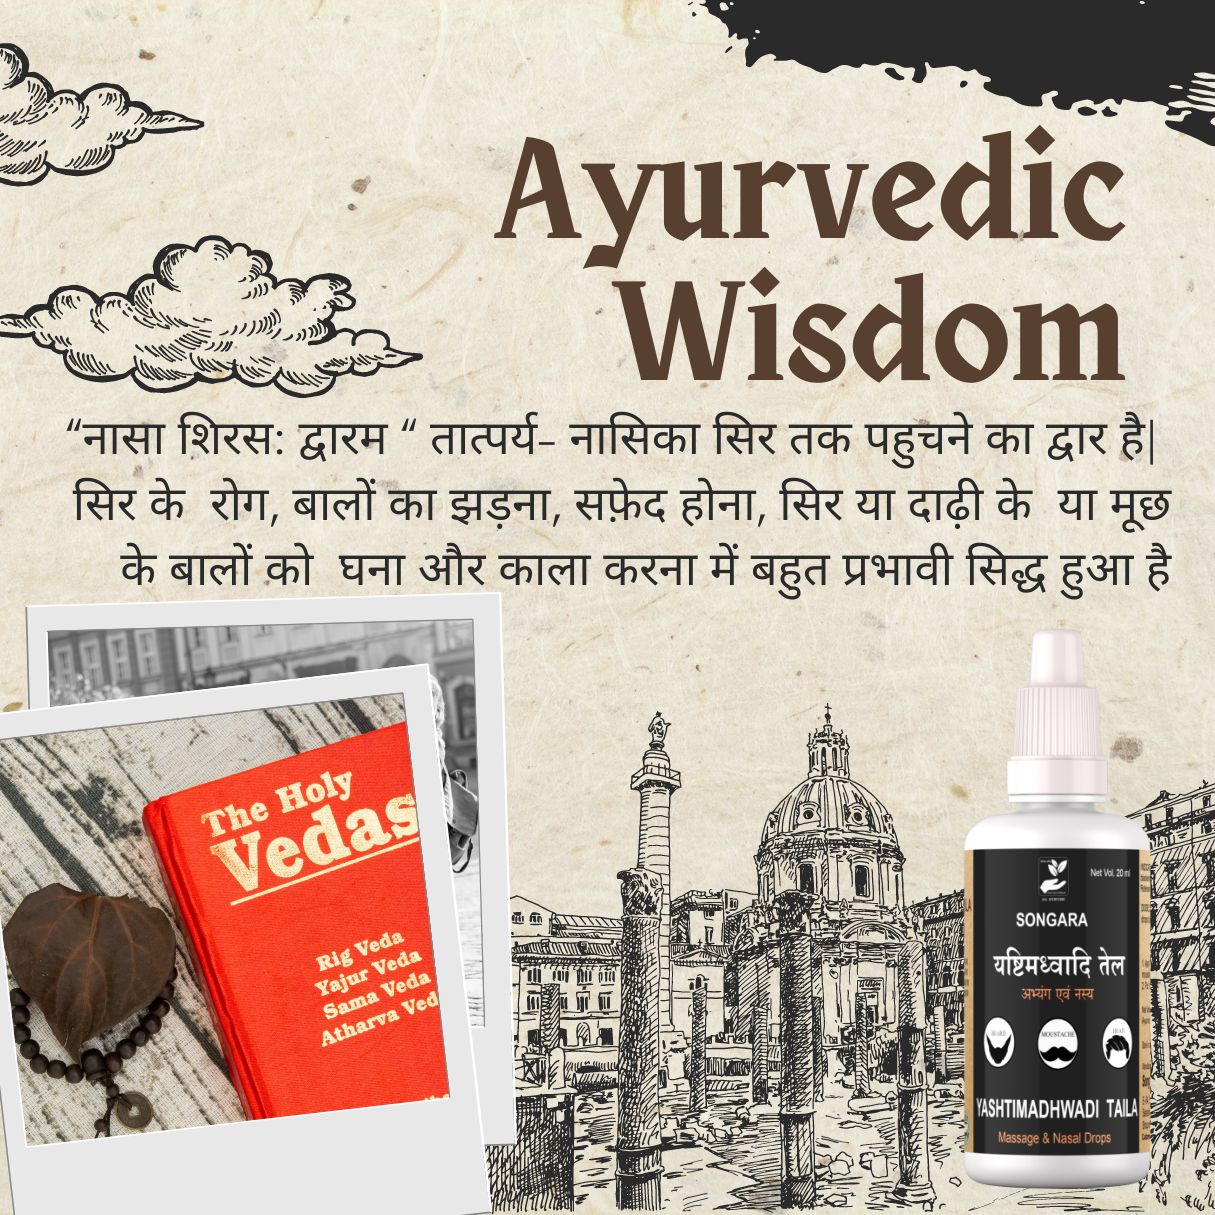 Songara Yashtimadhwadi Taila : Ayurvedic Nasya for Dark and Strong Hair of Beard, Moustache and Head (20 ml)